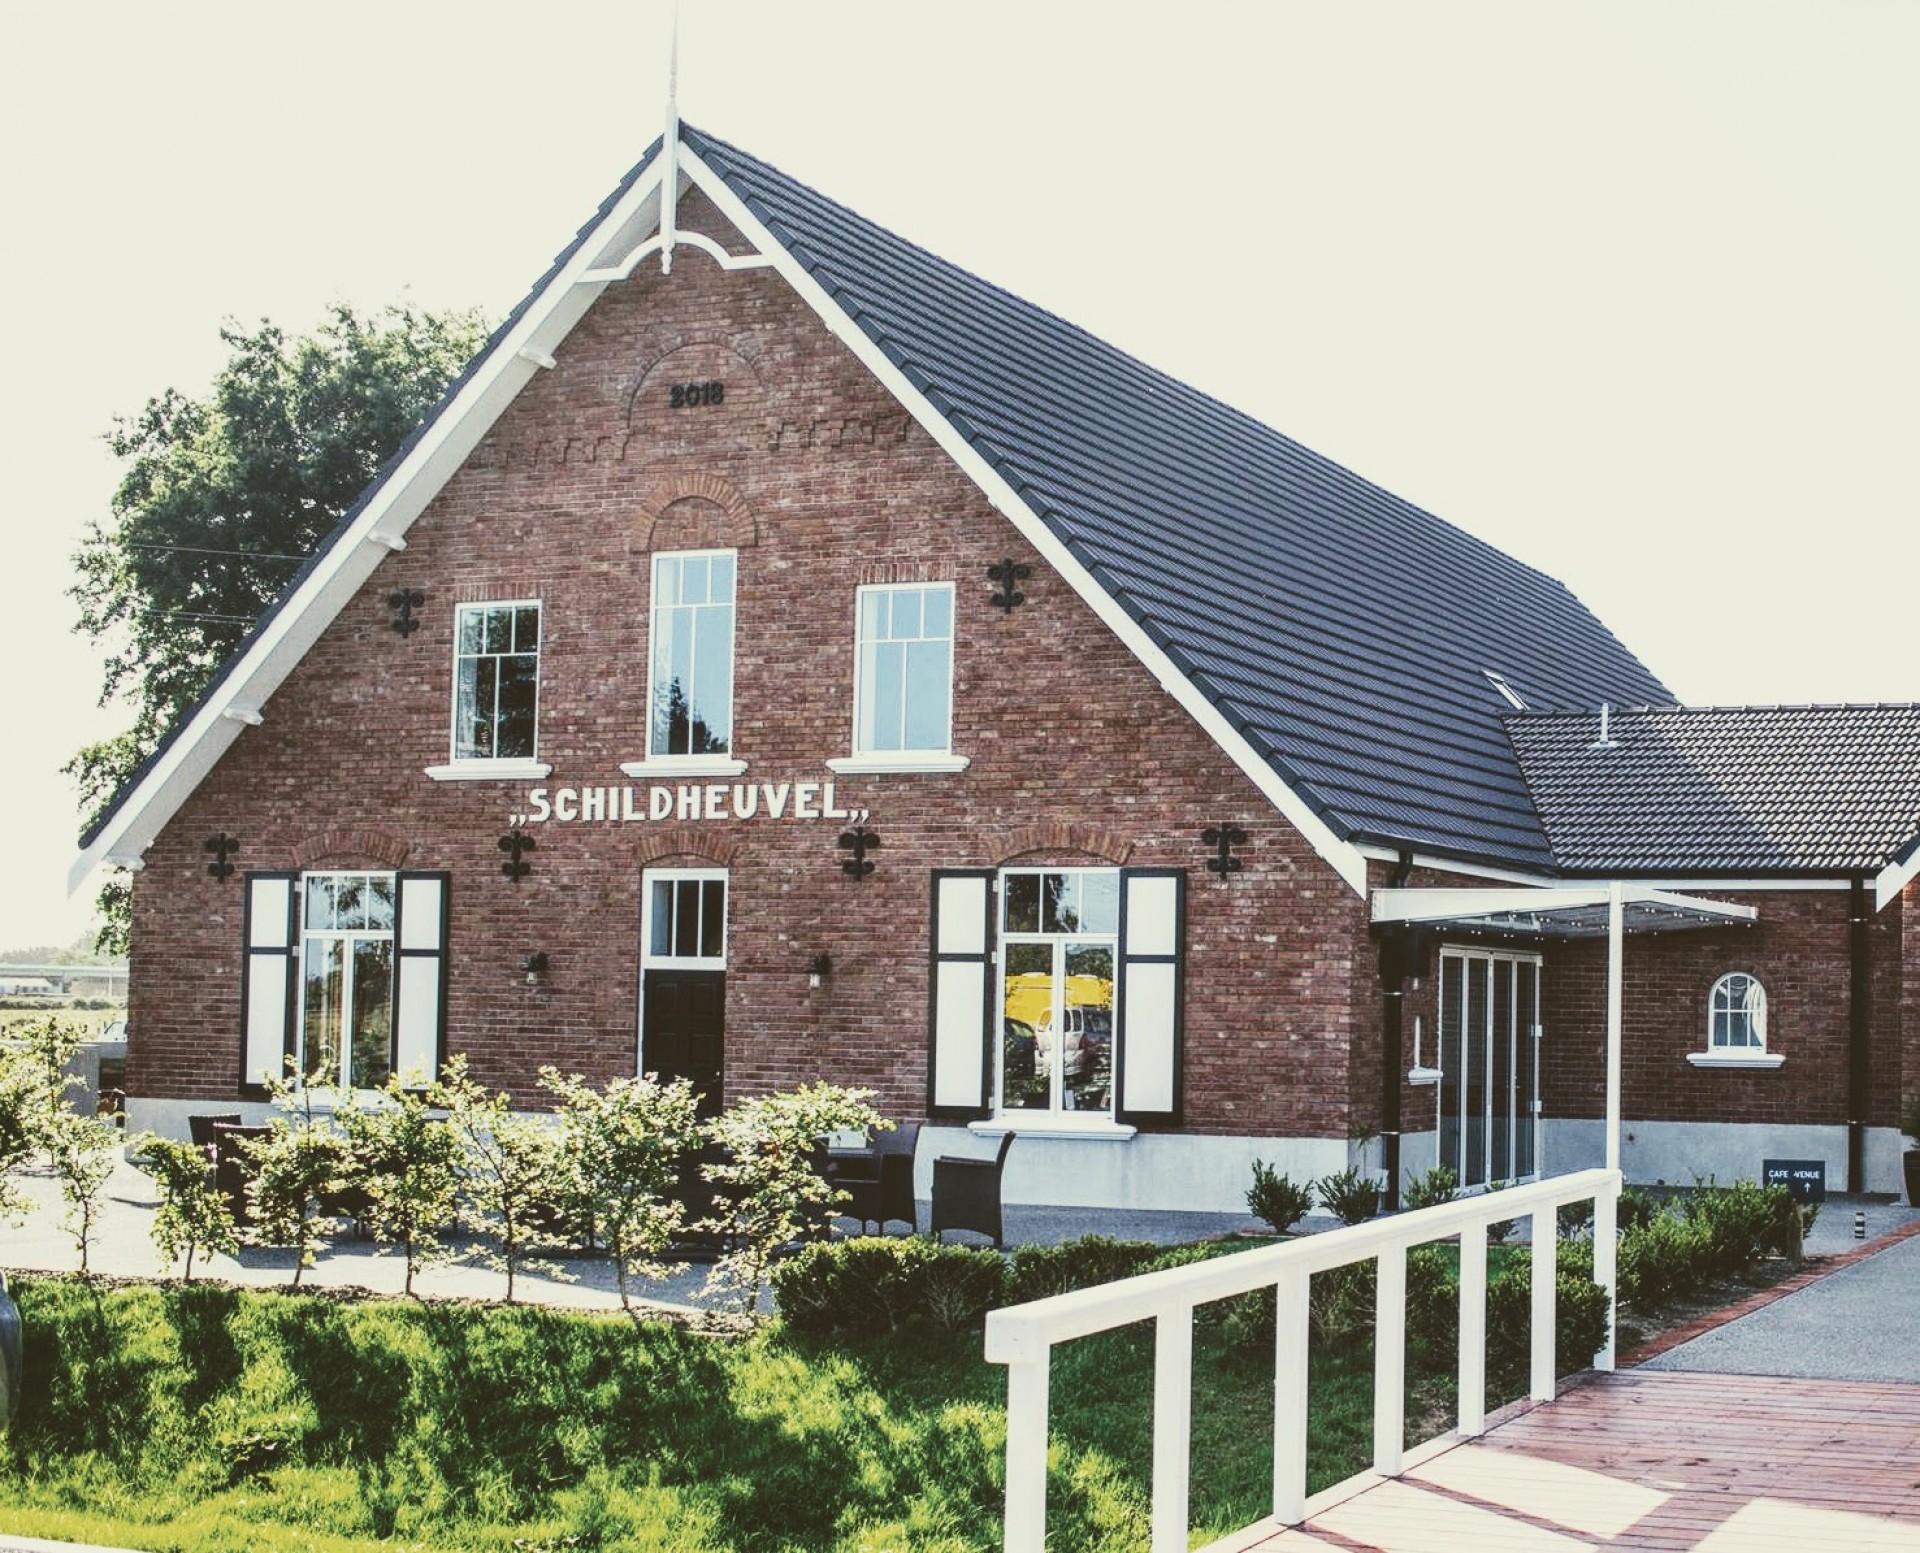 Zenders Dutch Restaurant & Venue